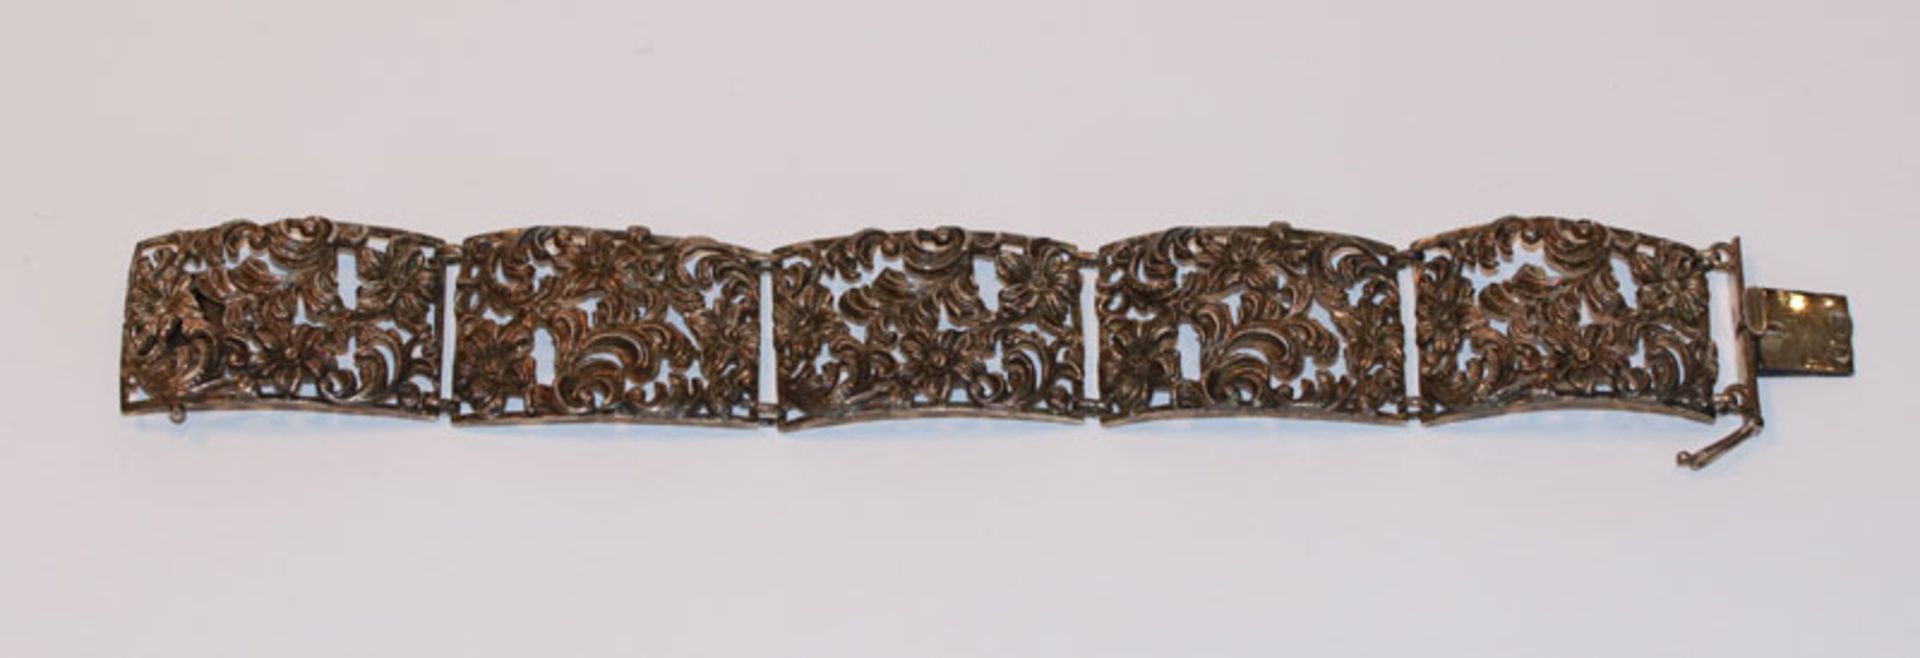 Silber Armband mit floralem Reliefdekor, L 18 cm, B 2,5 cm, 40 gr.